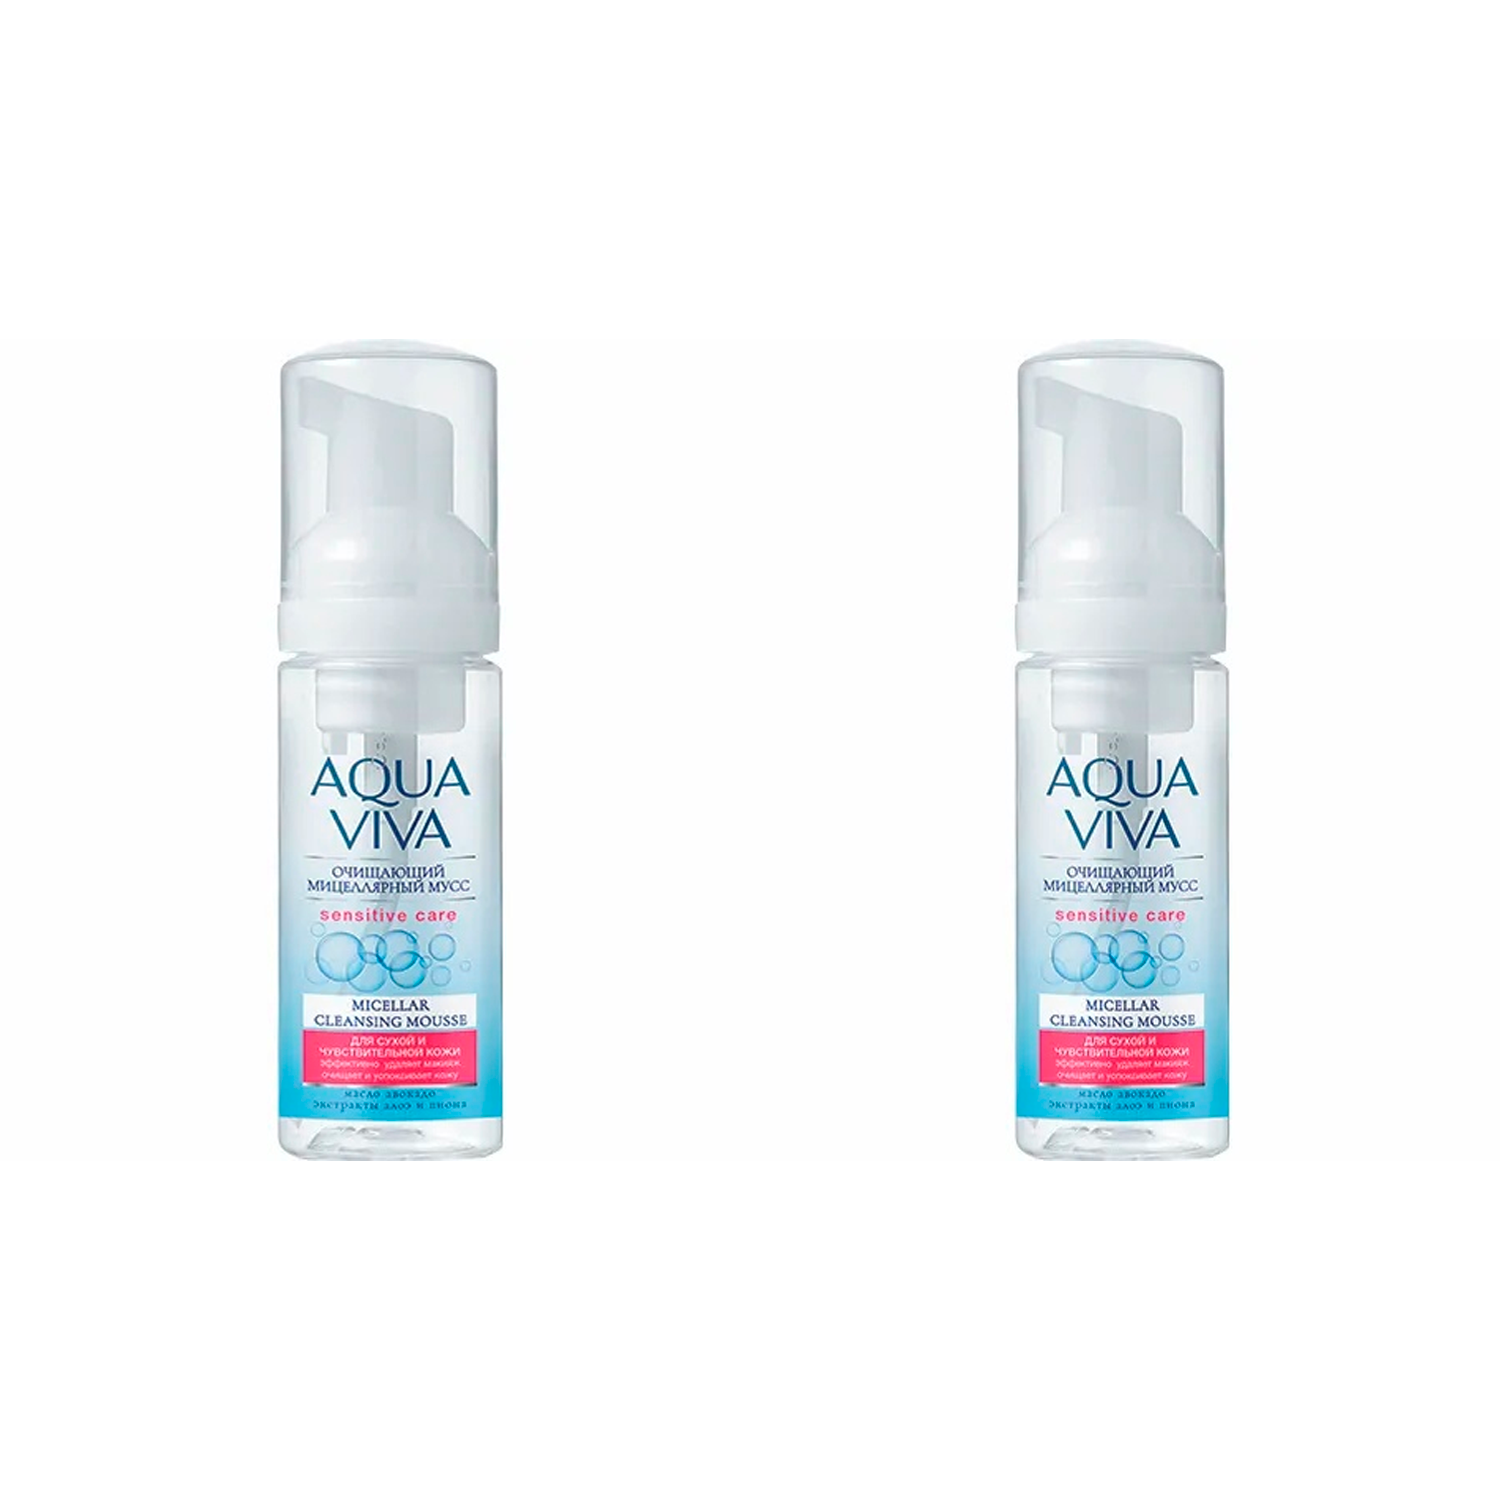 Мицеллярный мусс Romax очищающий для всех типов кожи Aqua Viva, 150 мл х 2 шт. очищающий мусс с успокаивающим действием soft cleansing mousse